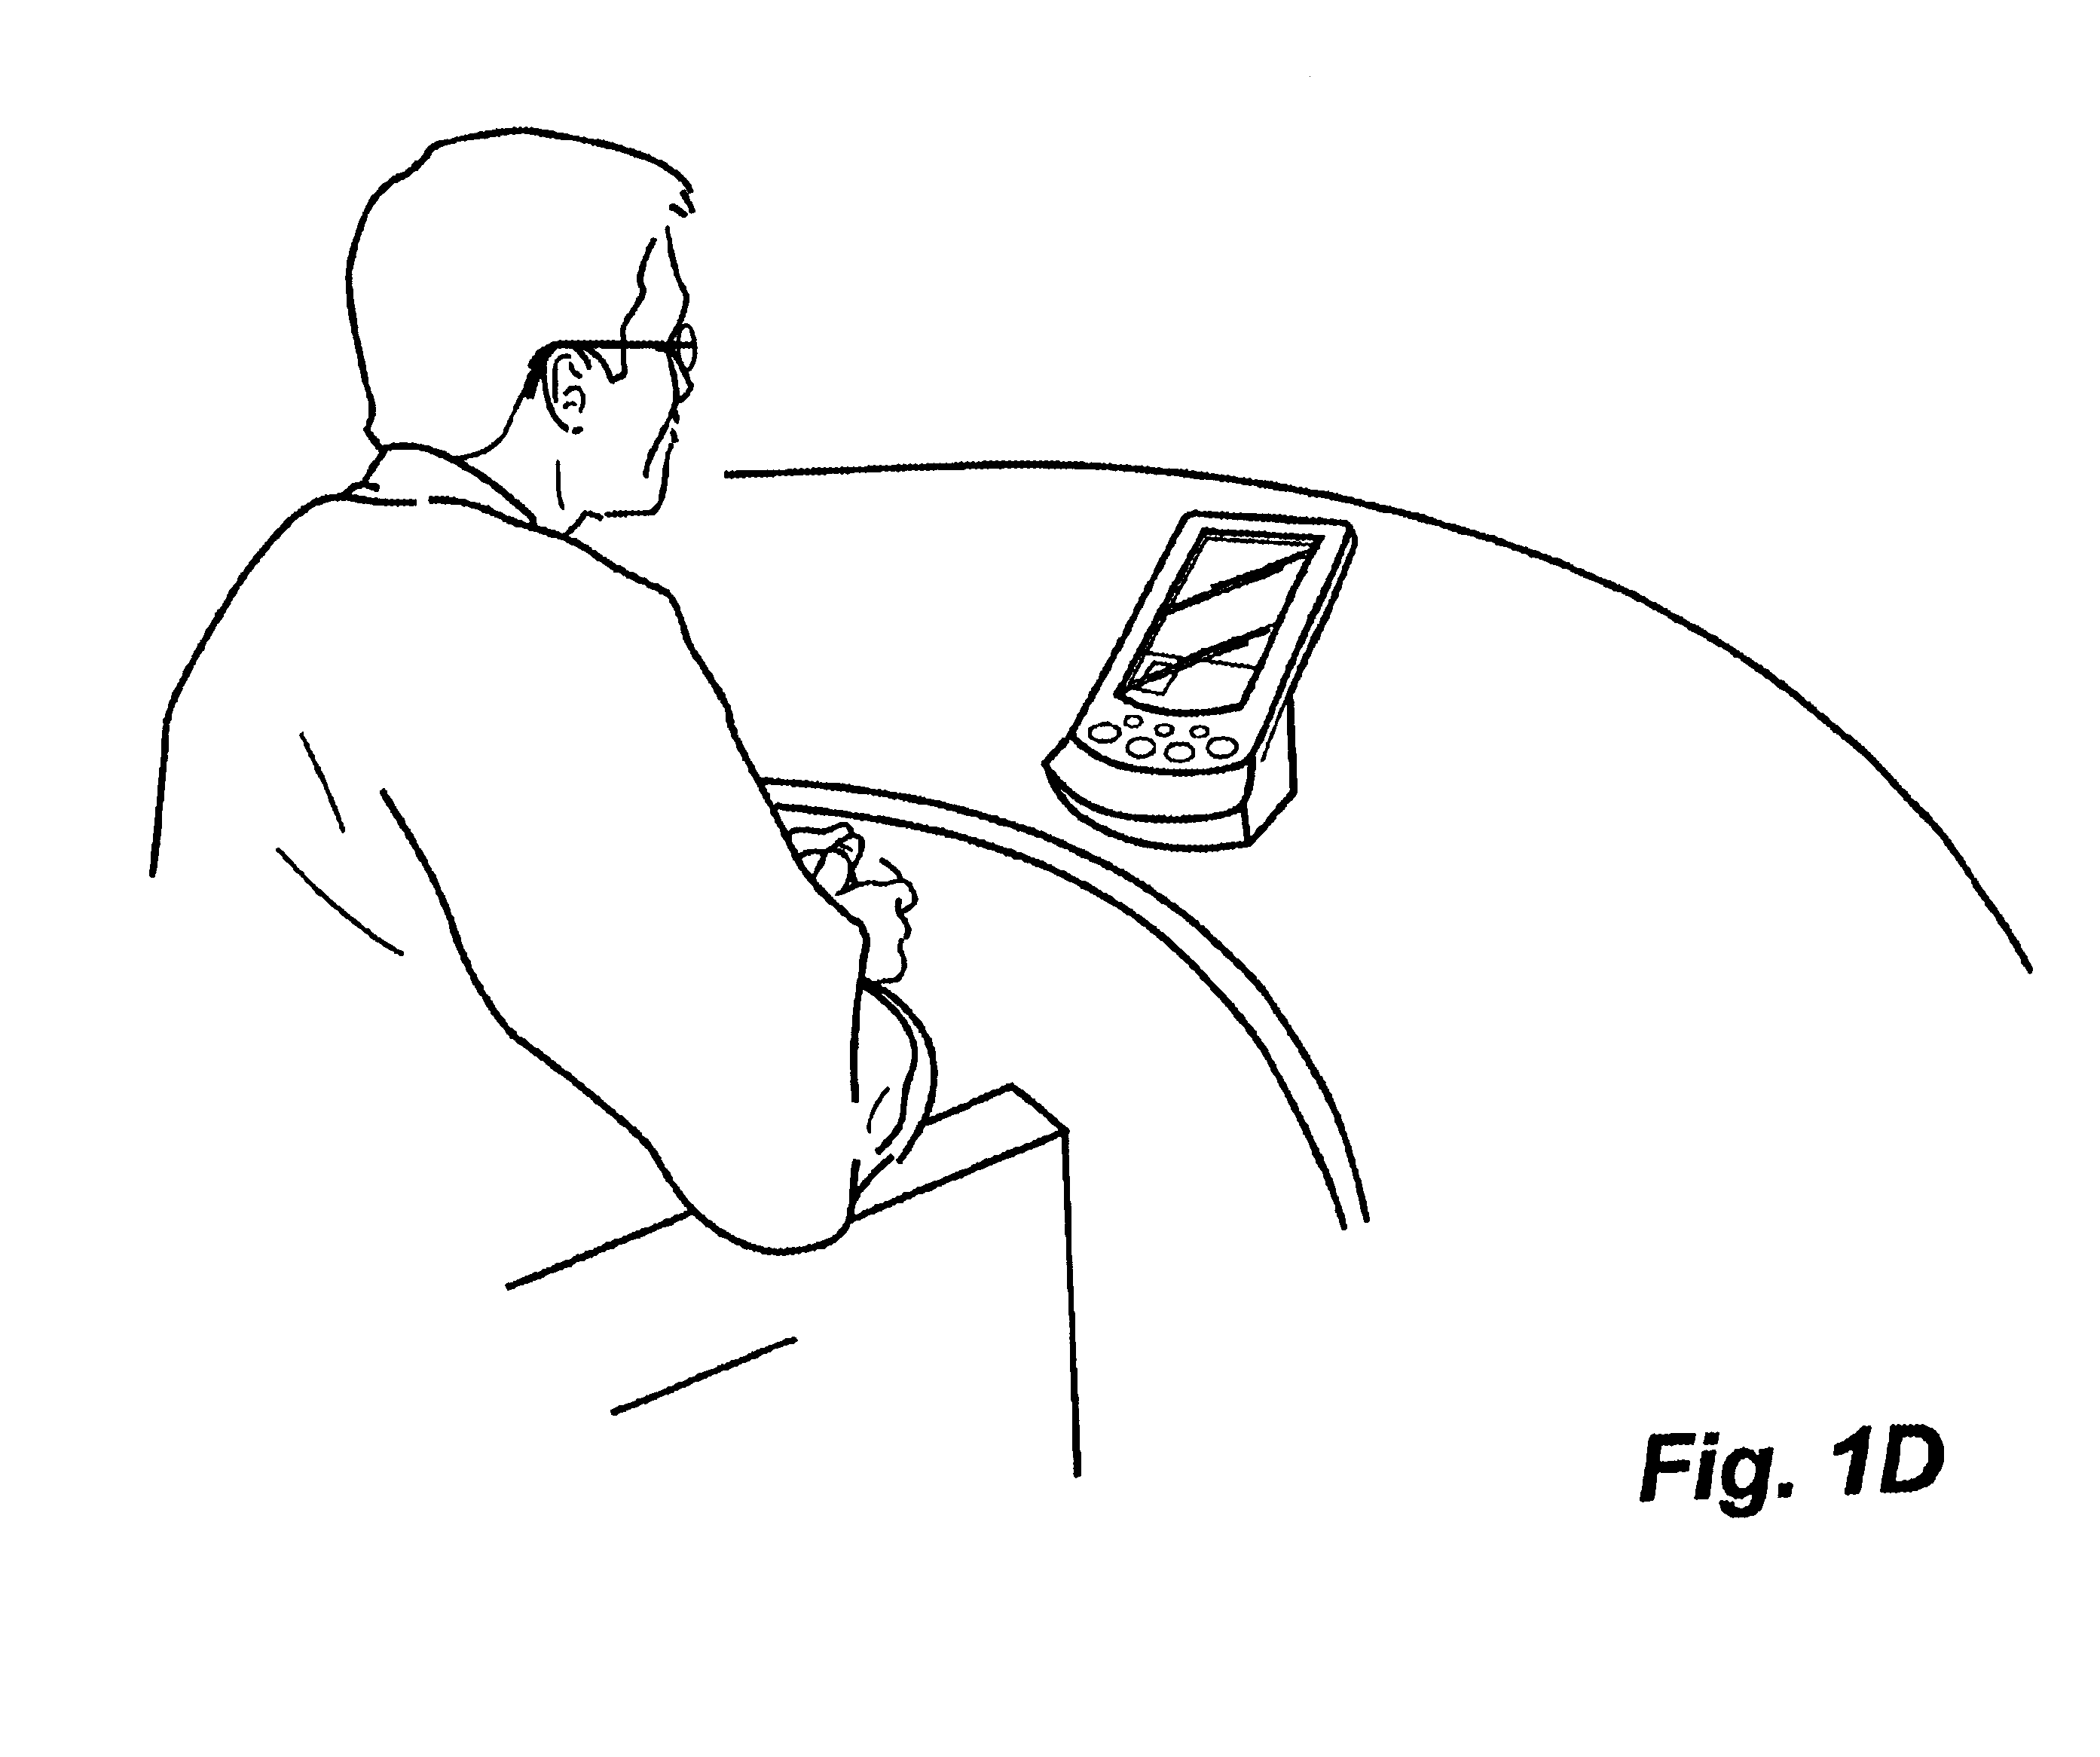 Fig 1D, palm emulator